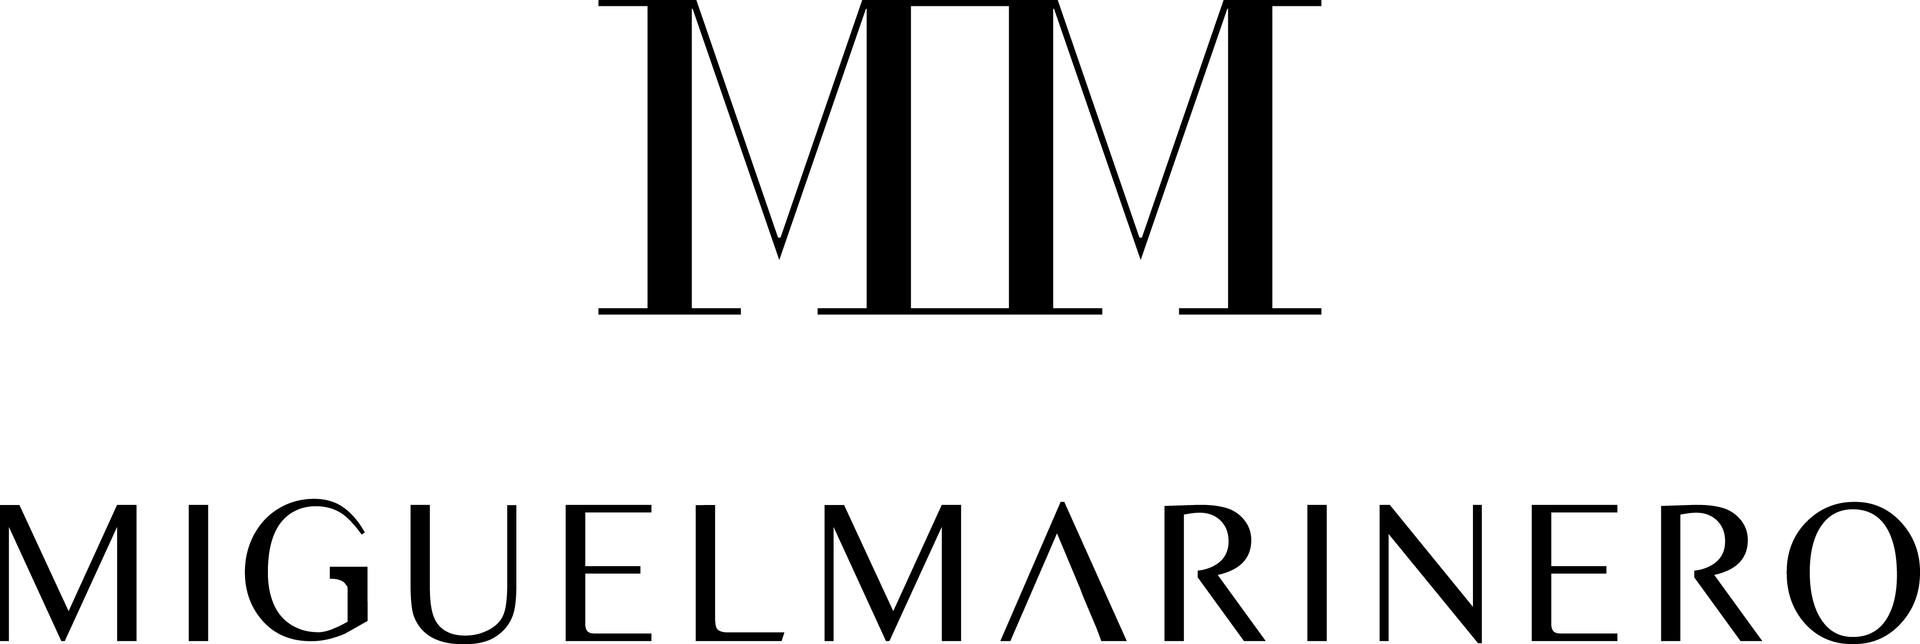 MIGUEL MARINERO logo de catálogo